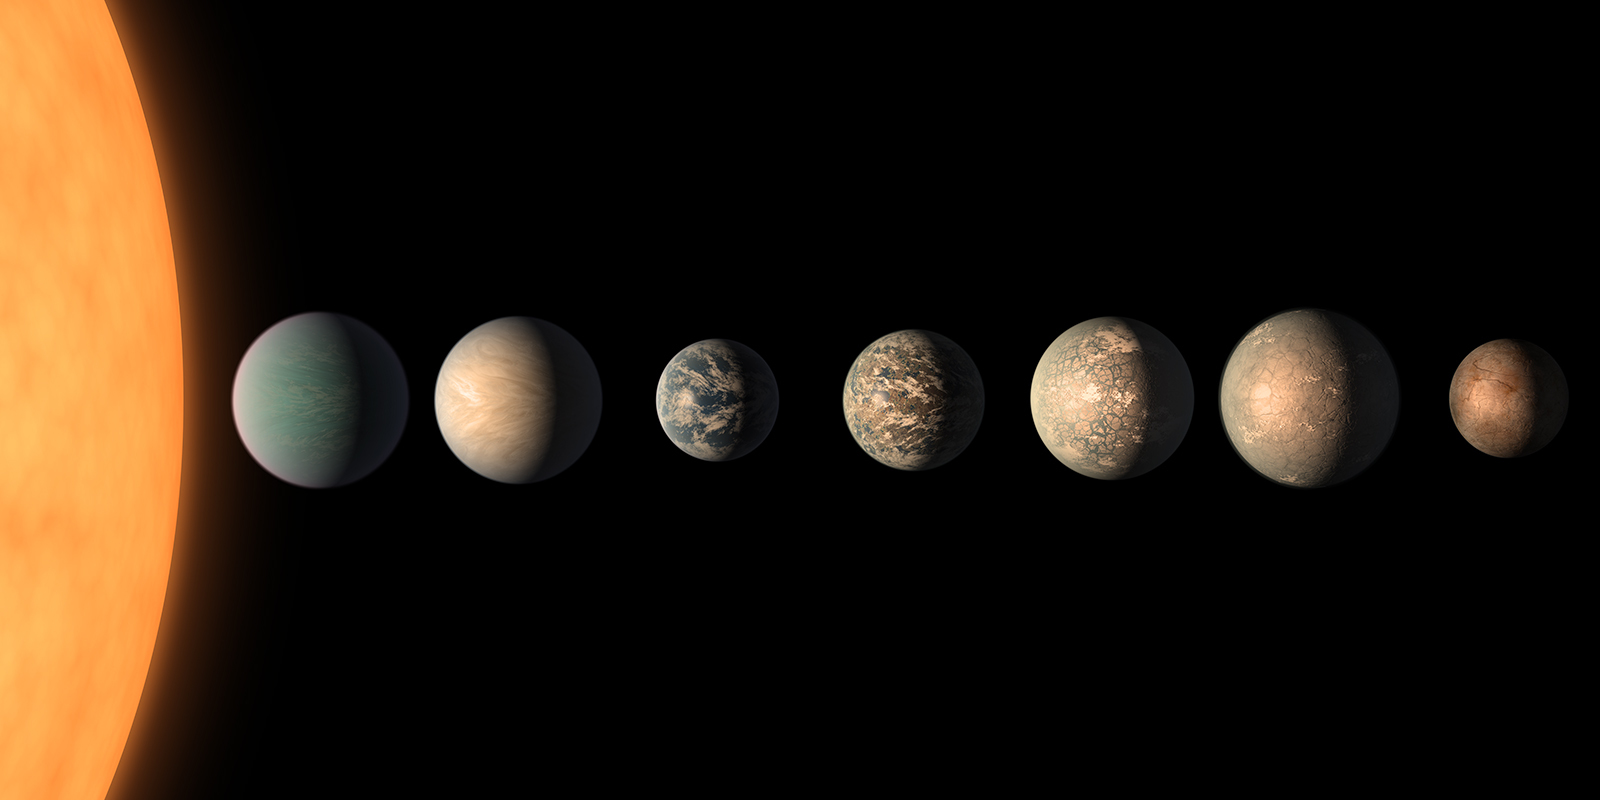 Schéma d’un système stellaire avec 8 planètes.